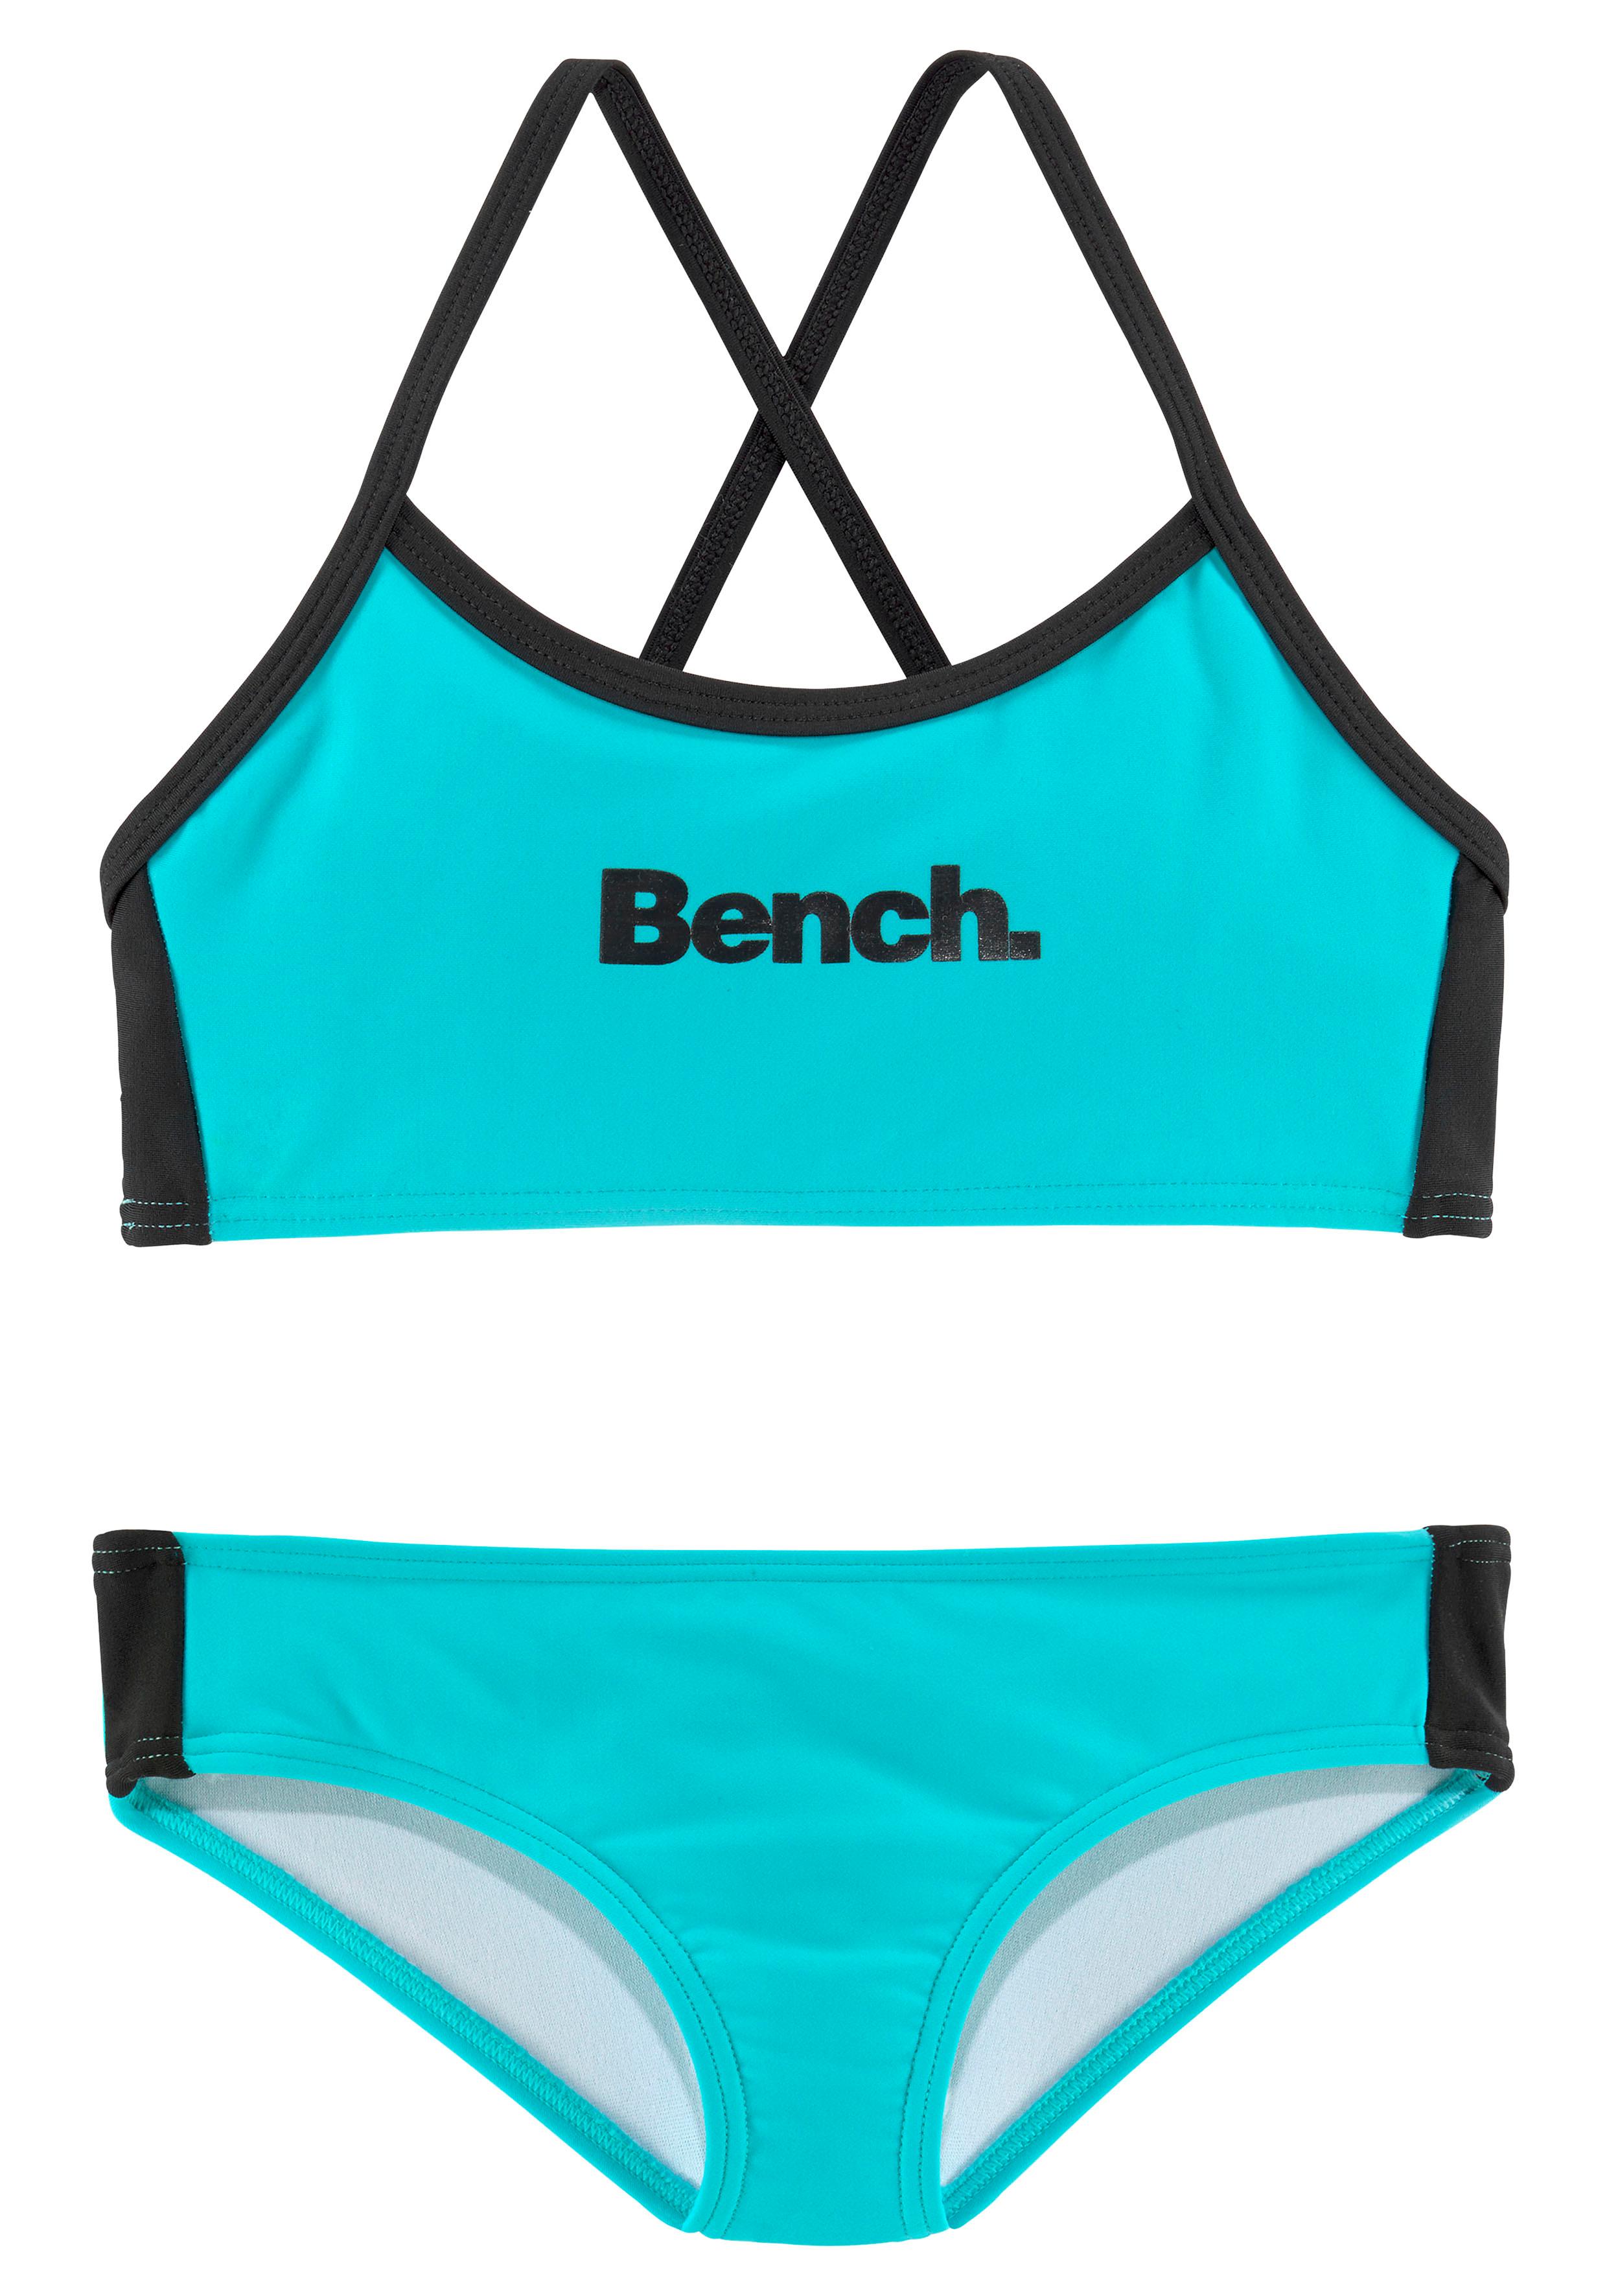 Bench. Triangel-Bikini, mit Logoprint an Hose und bei Top